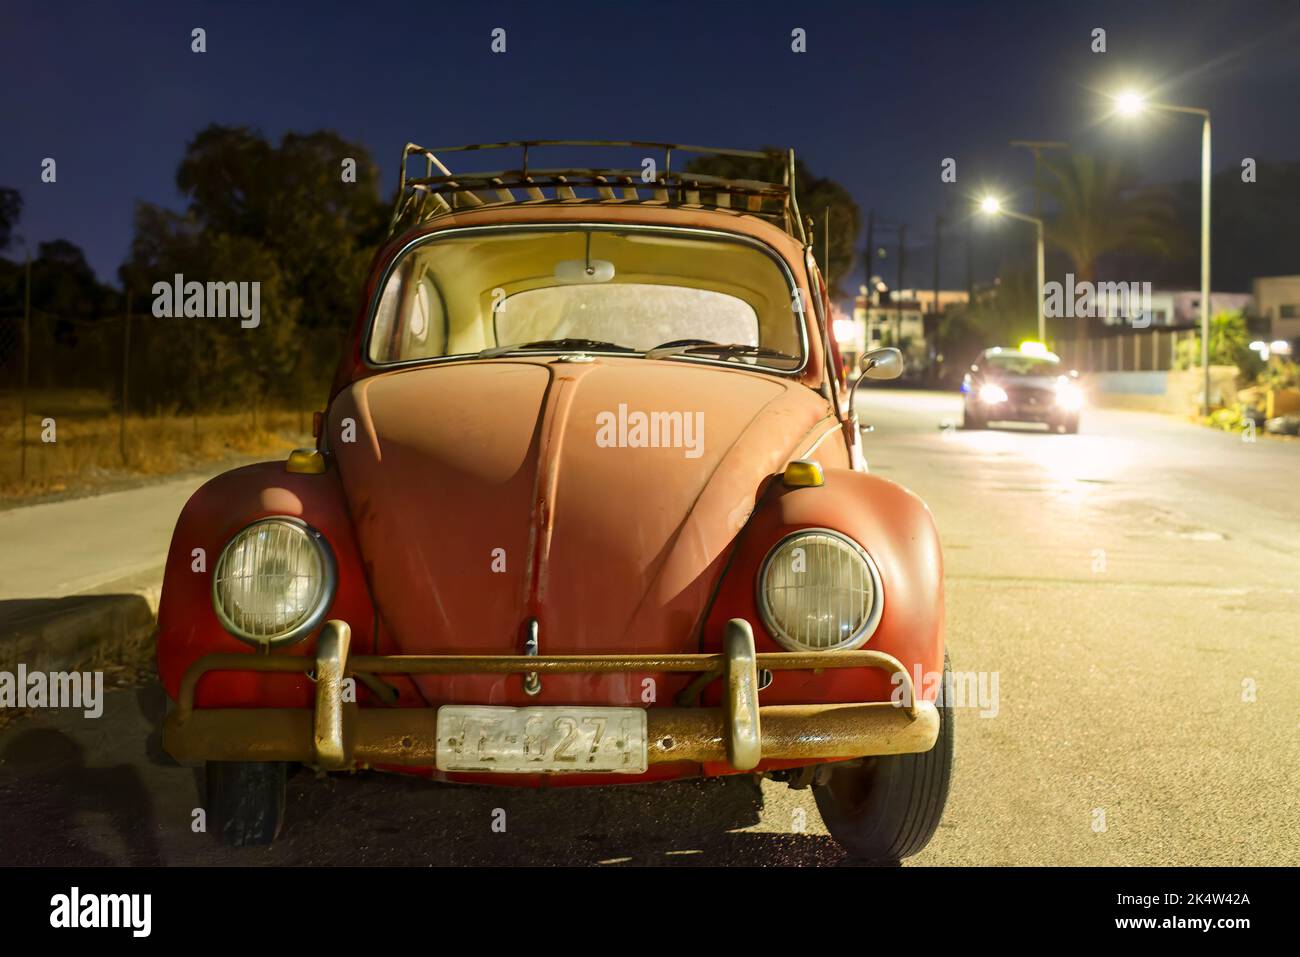 Ein alter Volkswagen oder VW Käfer parkte nachts auf dem Roadhouse. Es gibt niemanden mit dem klassischen alten Auto und es wird von nahe gelegenen Straßenlaternen beleuchtet Stockfoto